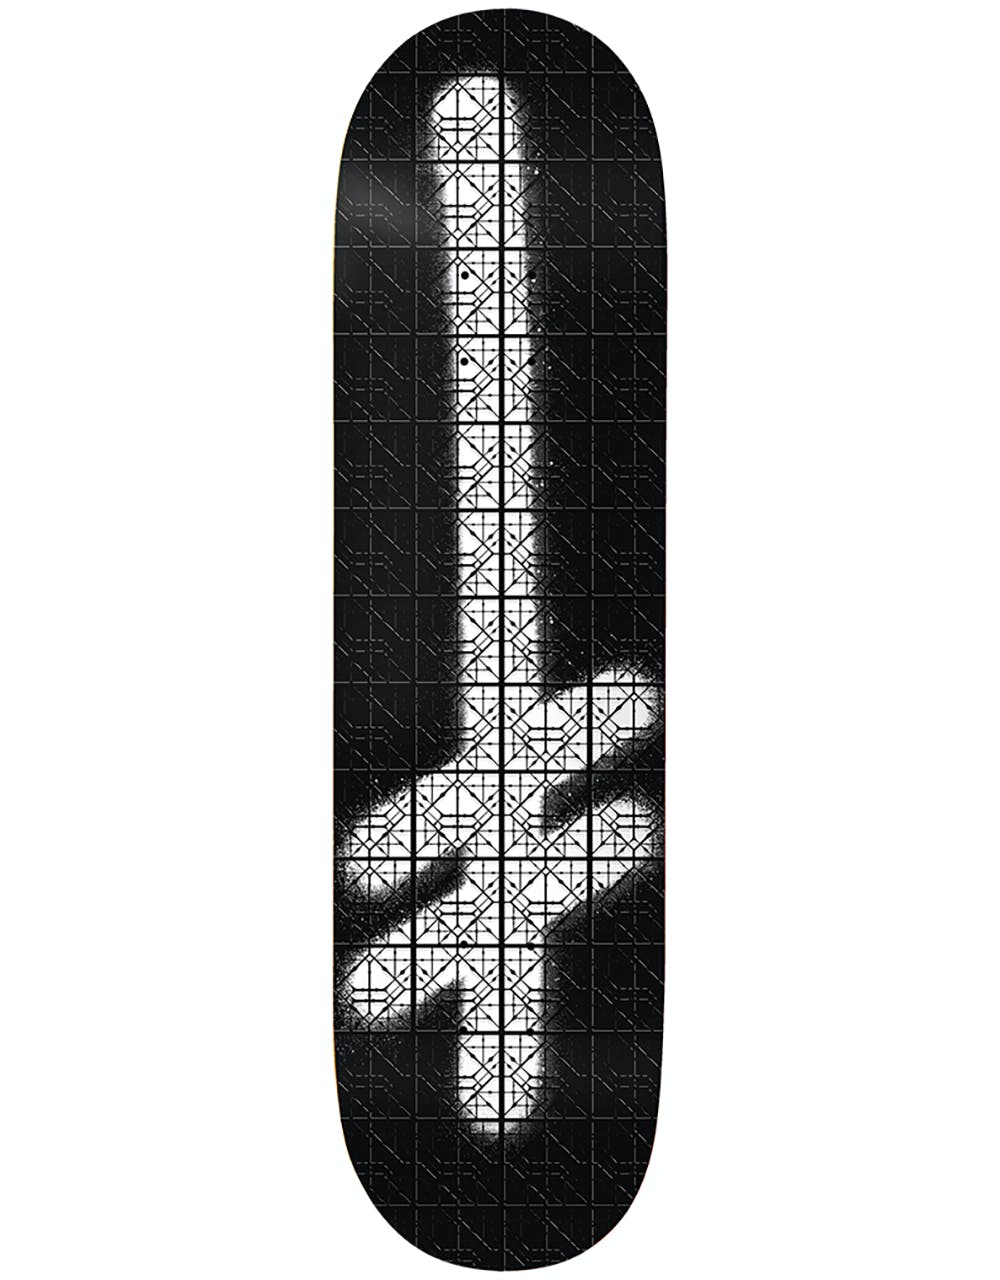 Deathwish Original G Iron Work Skateboard Deck - 8.75"